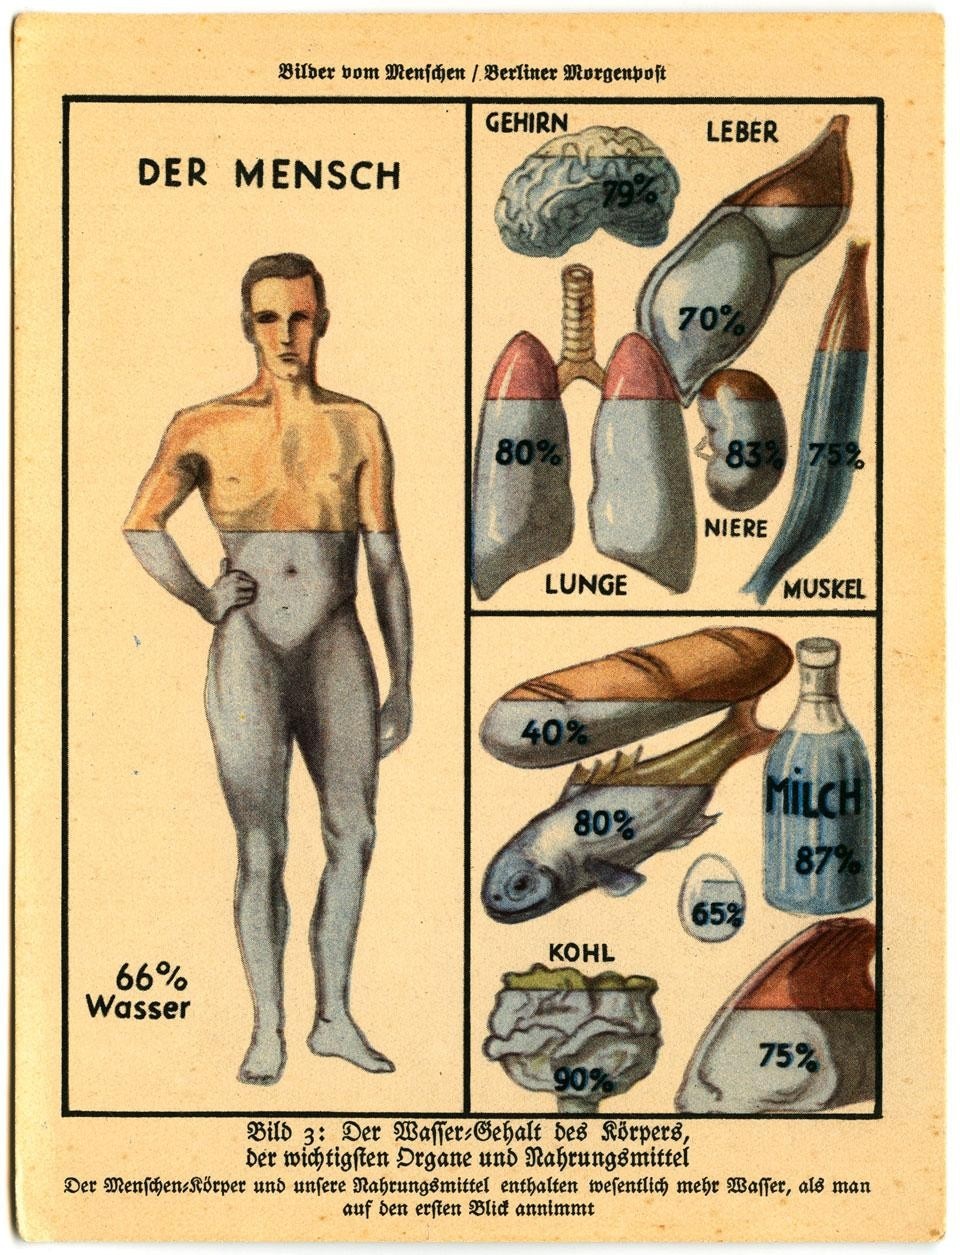 <em>Der Wasser</em>,
from <em>Bilder vom Menschen</em>
(1931), originally published
in the <em>Berliner Morgenpost</em>